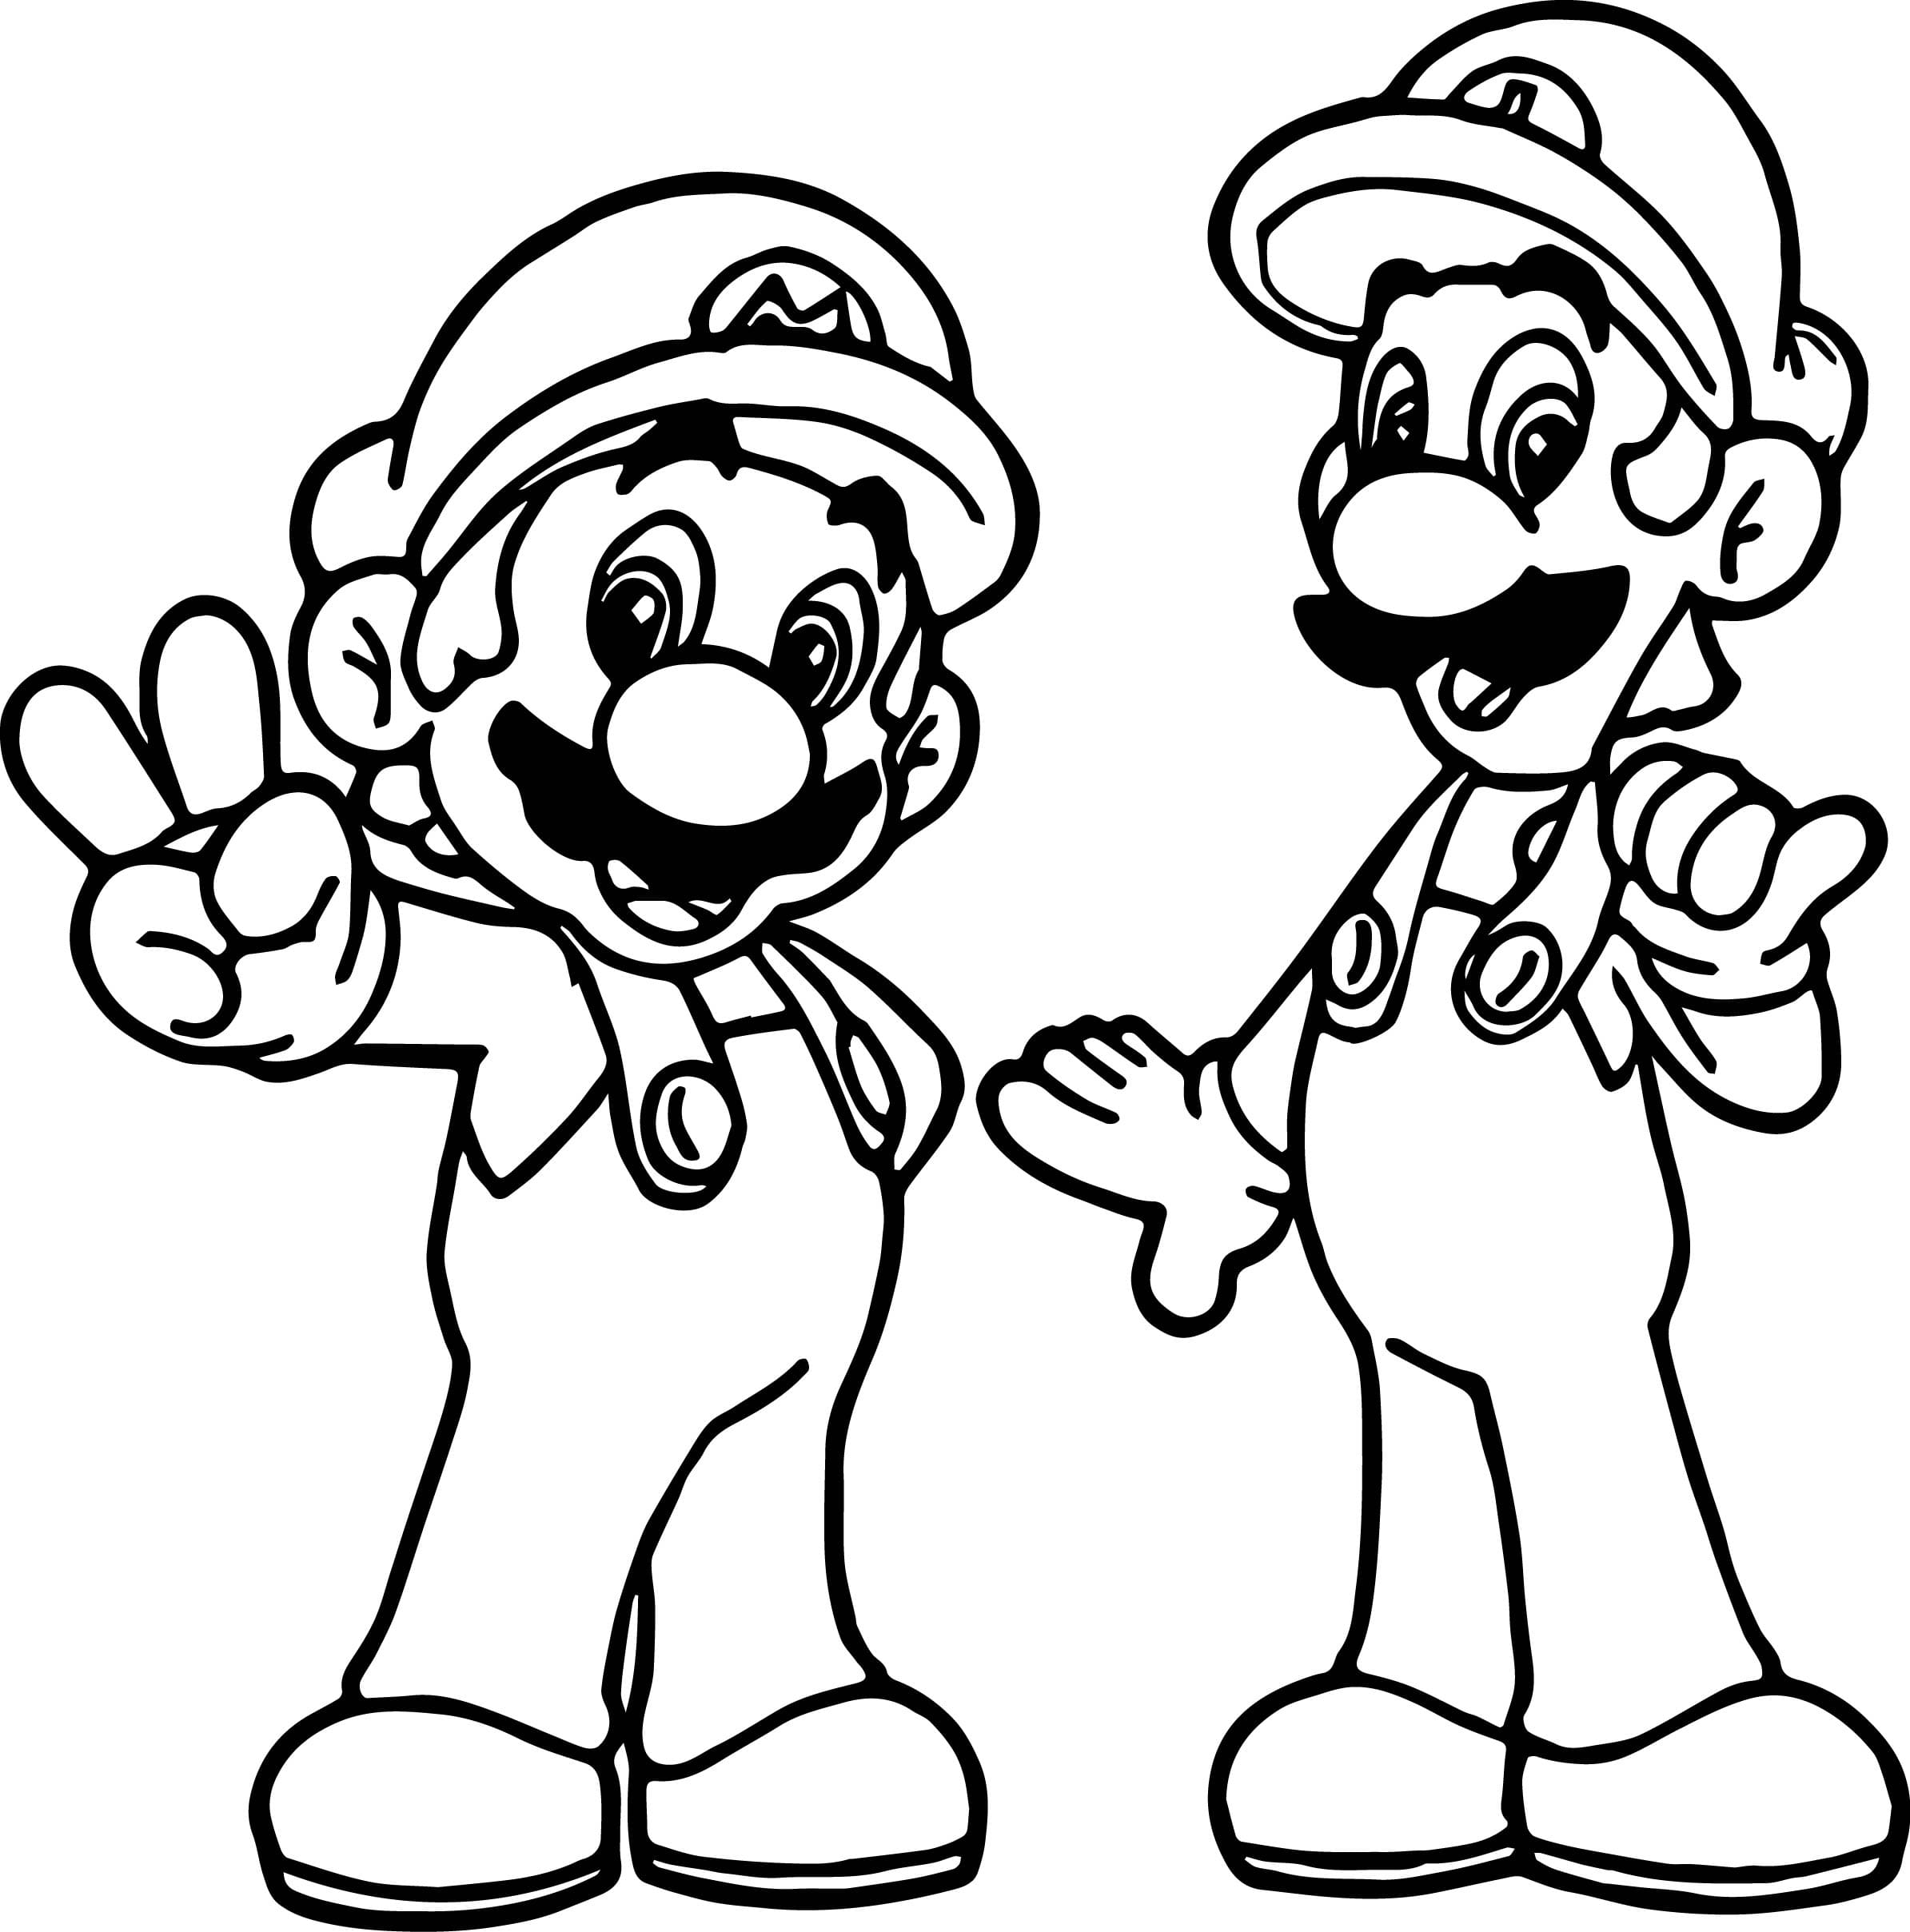 Coloriage Mario - Imprimez gratuitement les 100 meilleures images